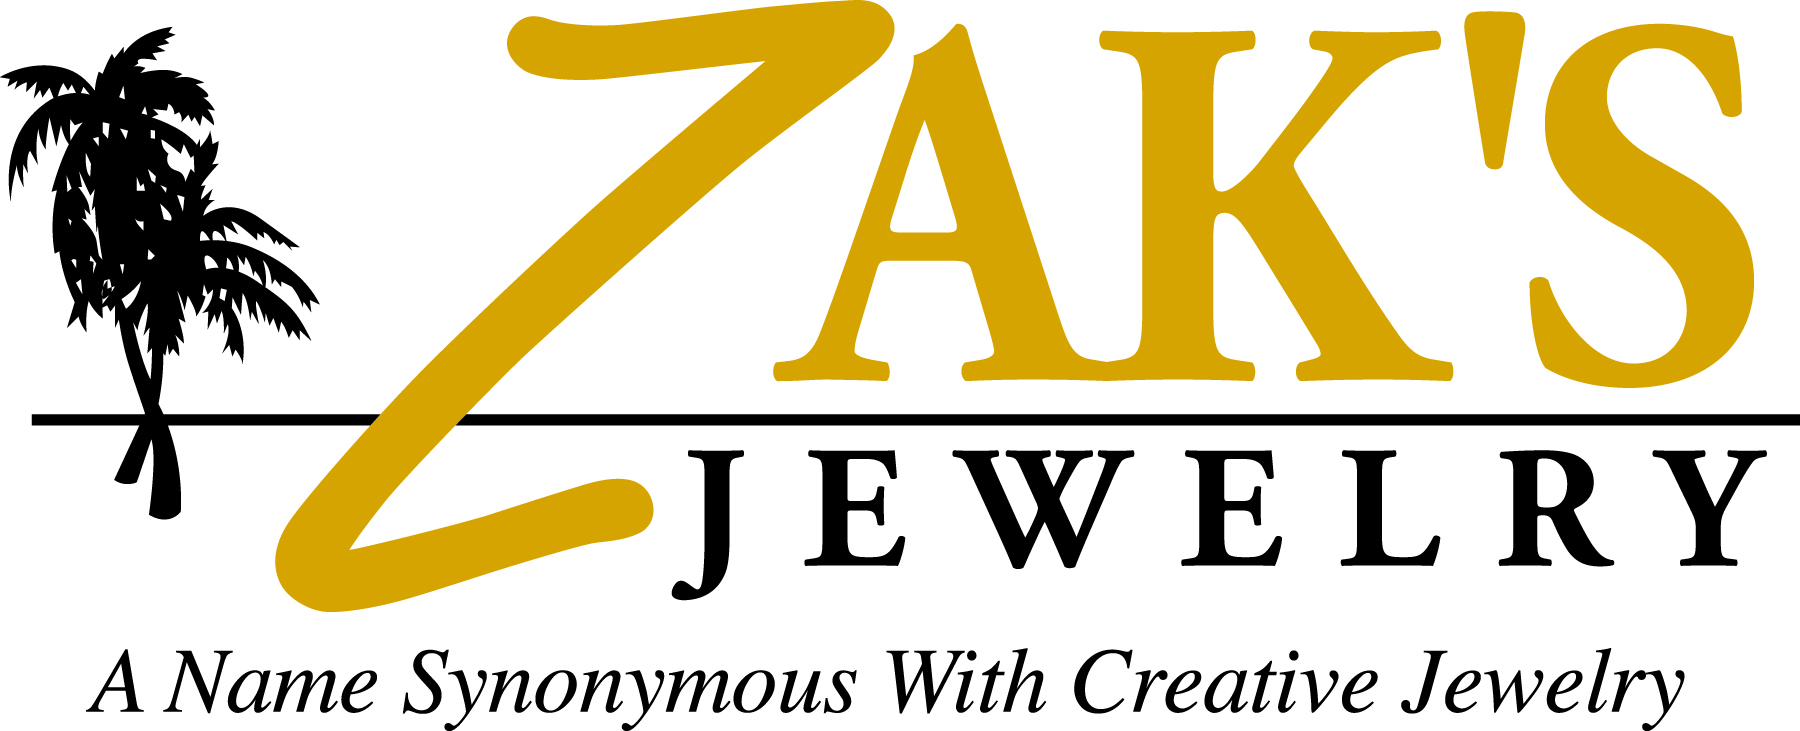 y. Zaks Jewlery (Local Business Partner)